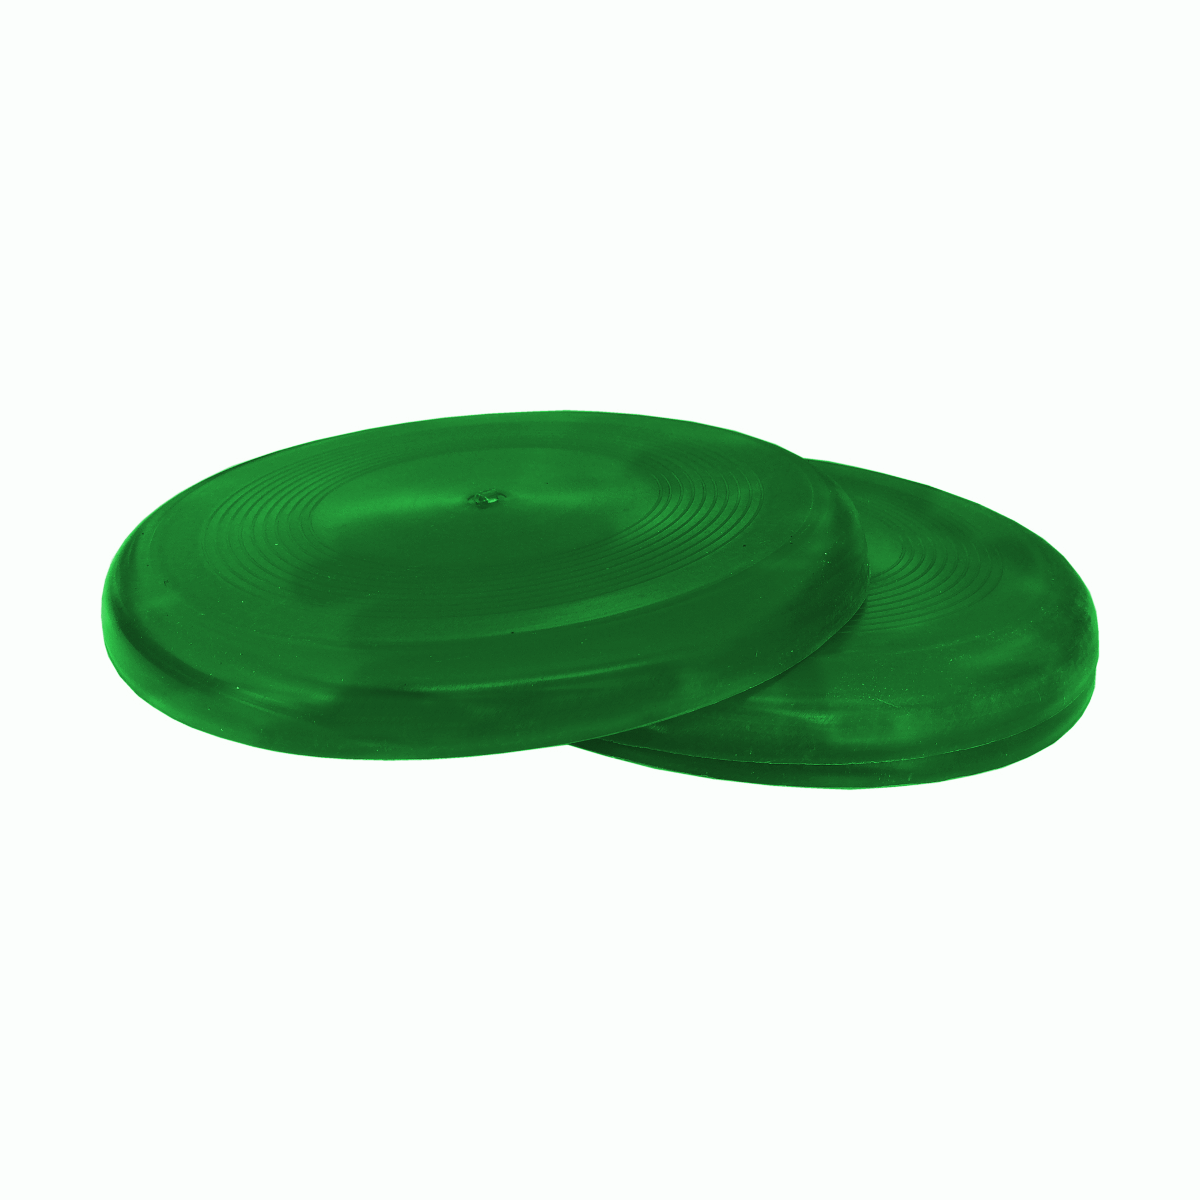 CLZ205  Köpek Eğitim Frizbi Oyuncak 22 cm  Yeşil